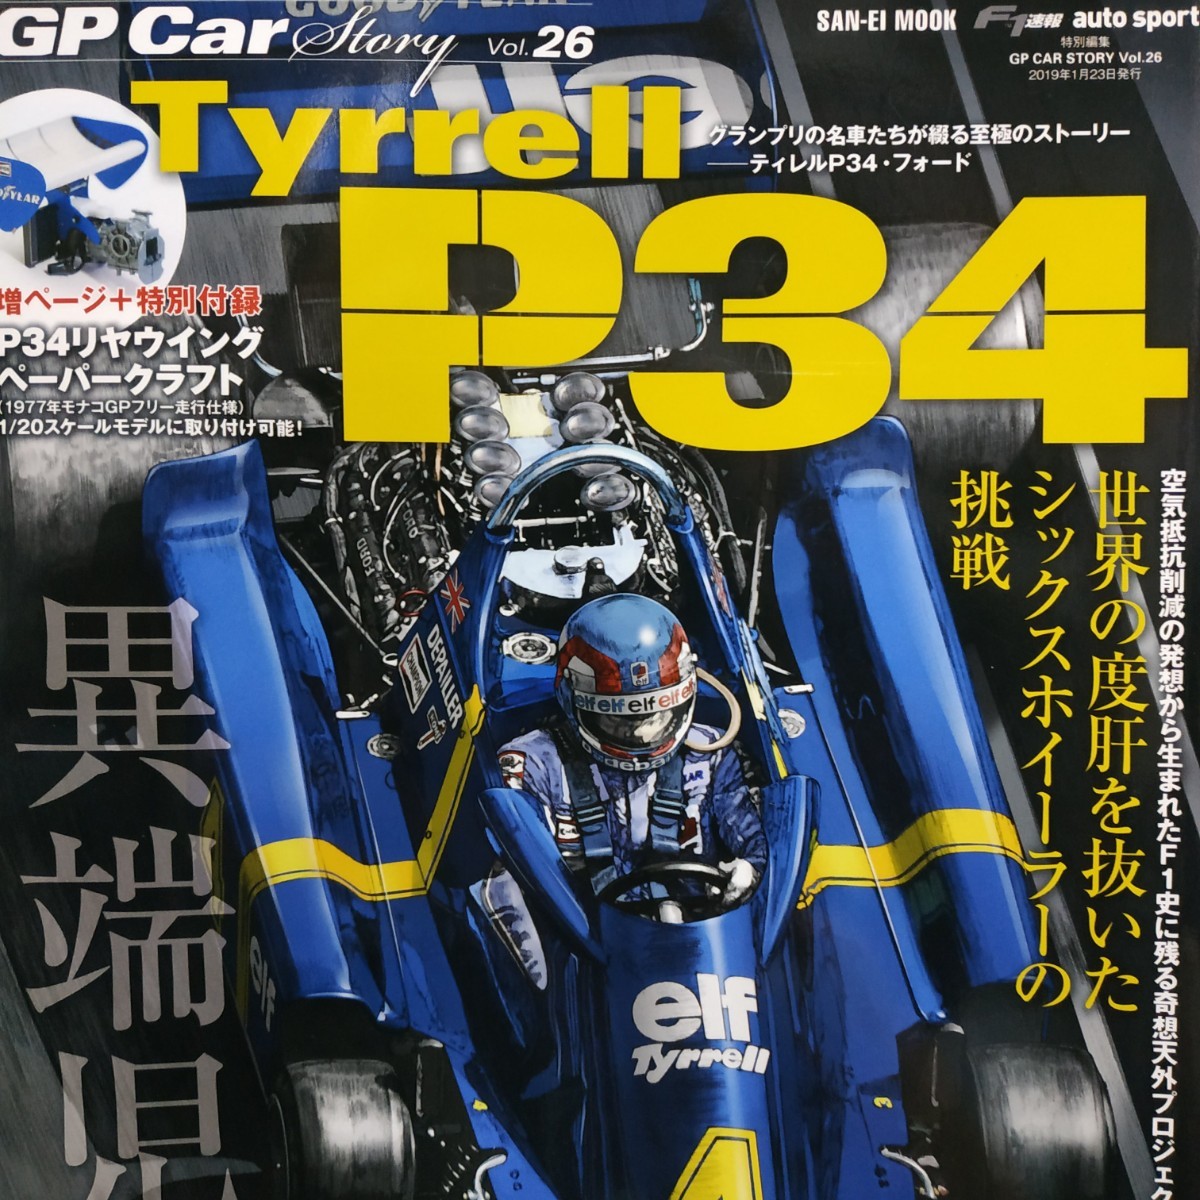 GP Car Story26 Tyrell P34 6 шт. до включение в покупку возможно три . книжный магазин SANEI F1 Grand Prix машина -тактный - Lee 